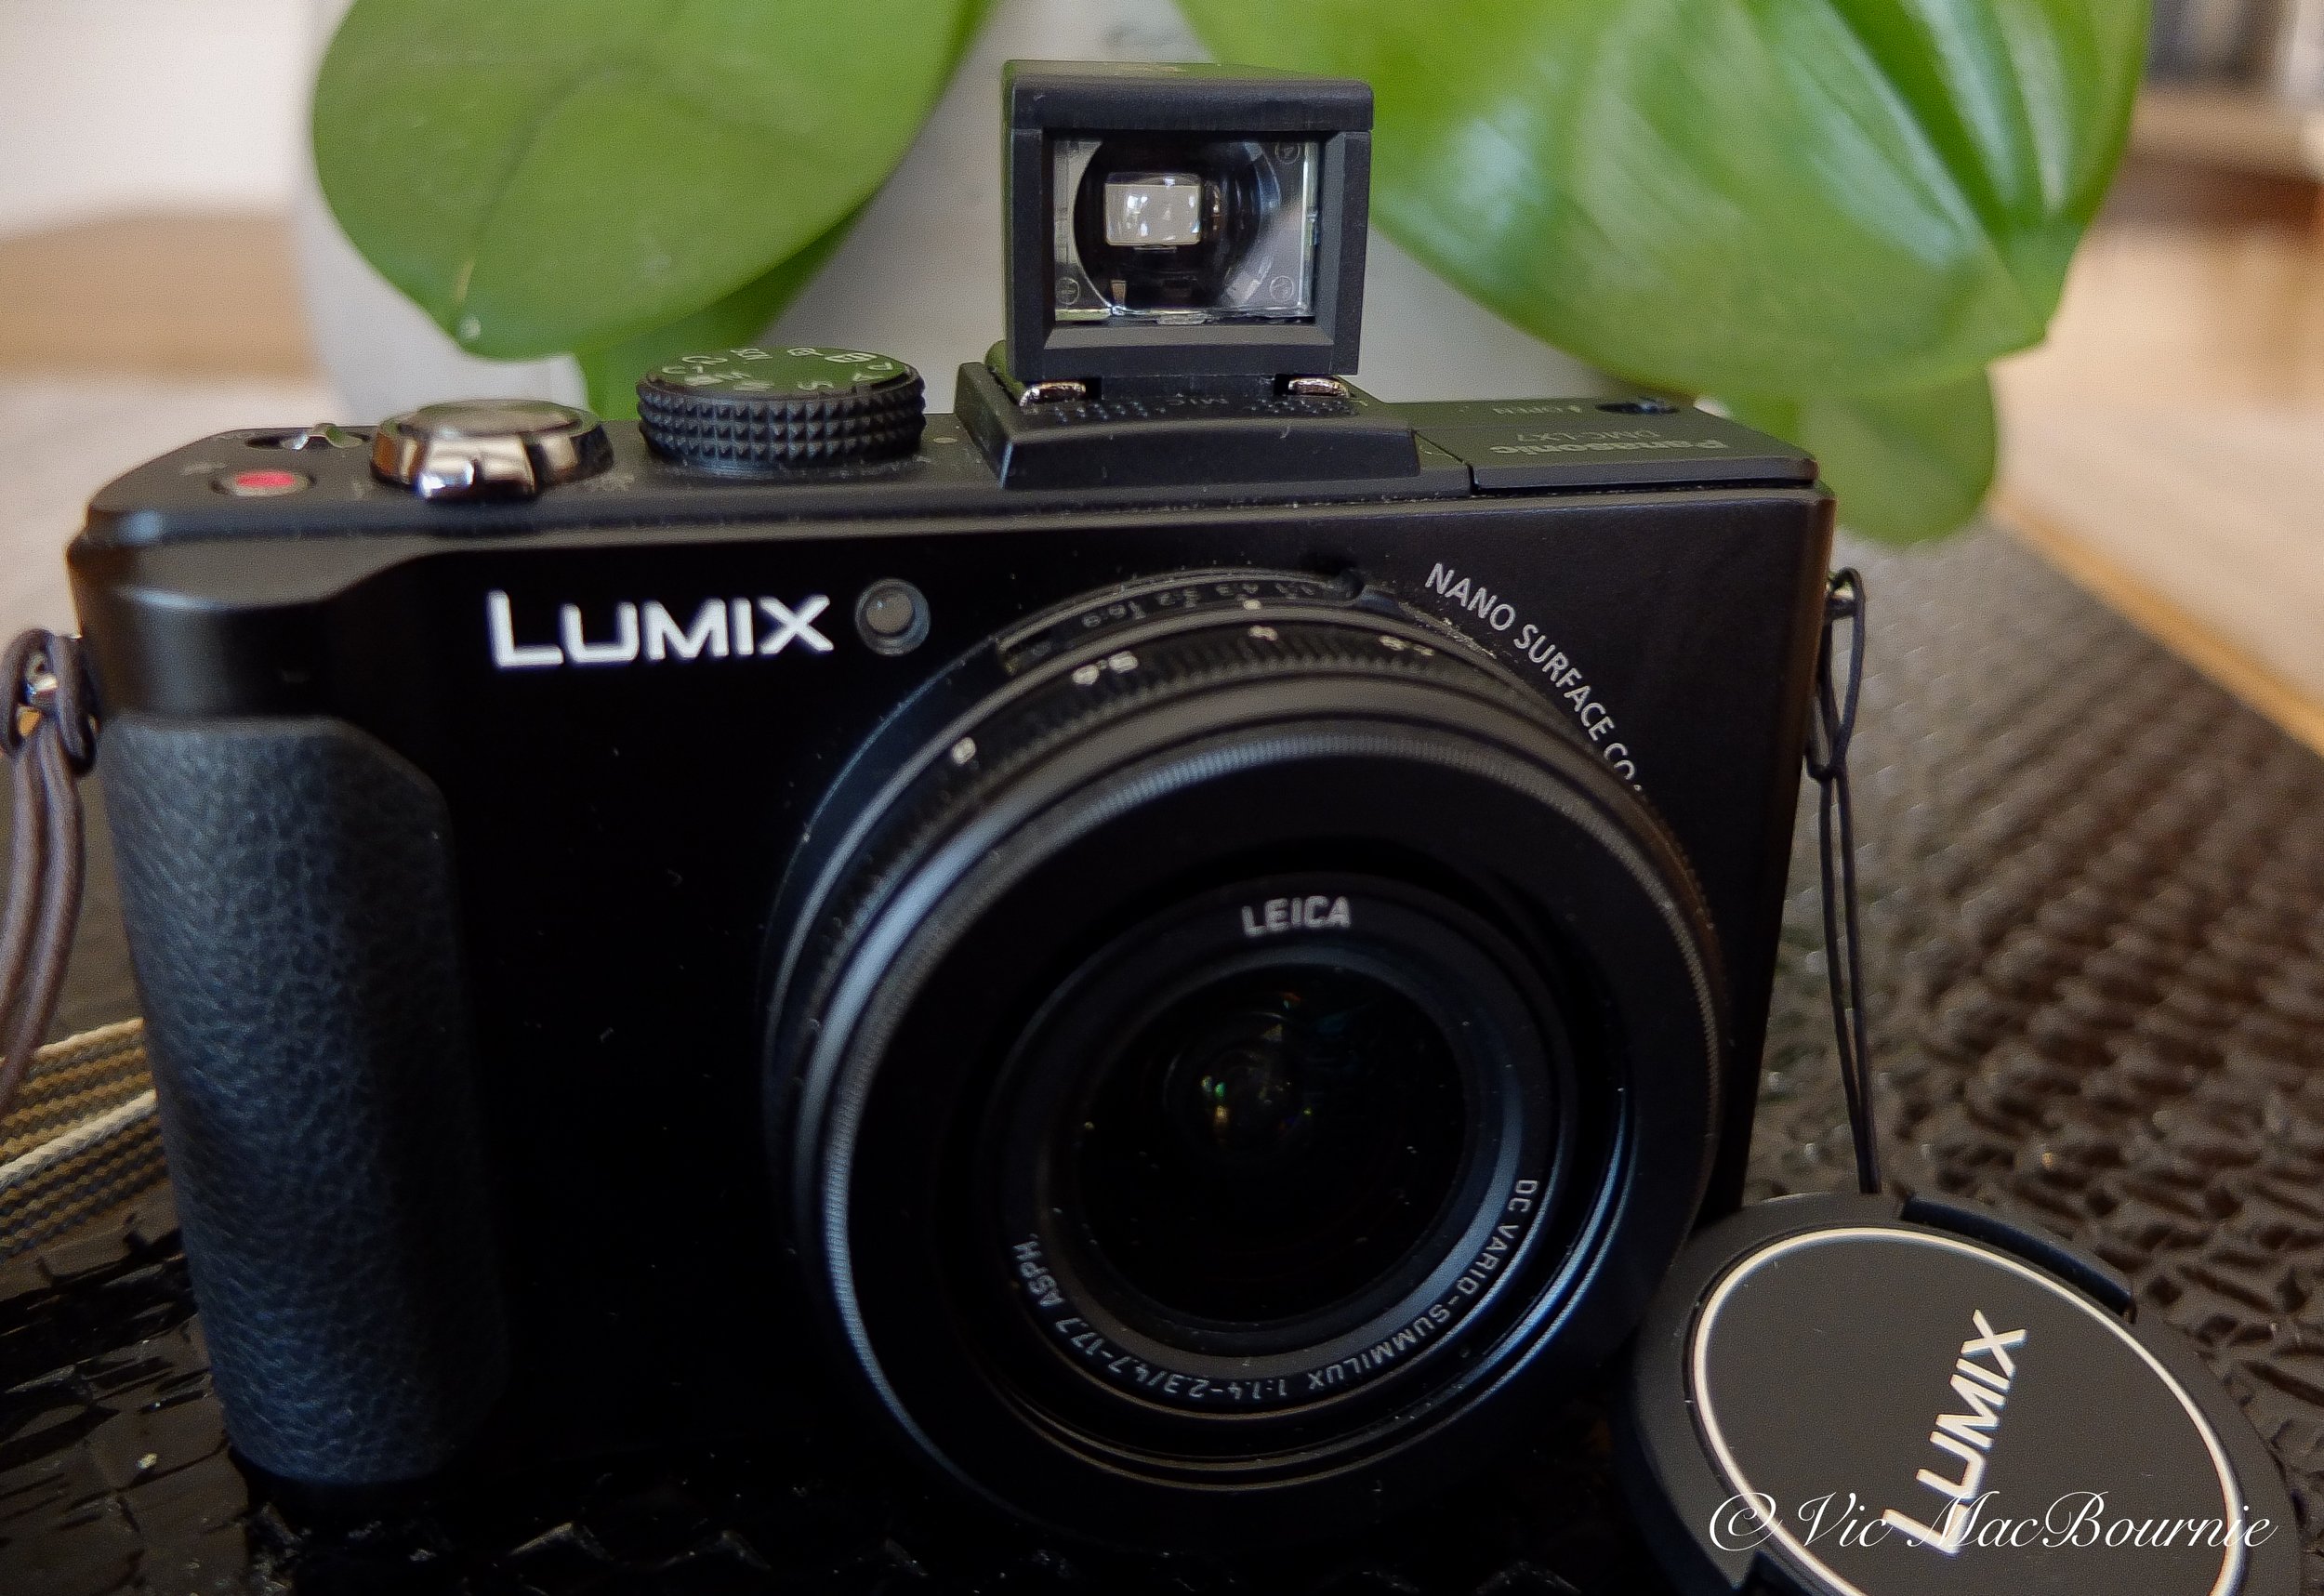 Lichifit 28mm viewfinder on Lumix X7